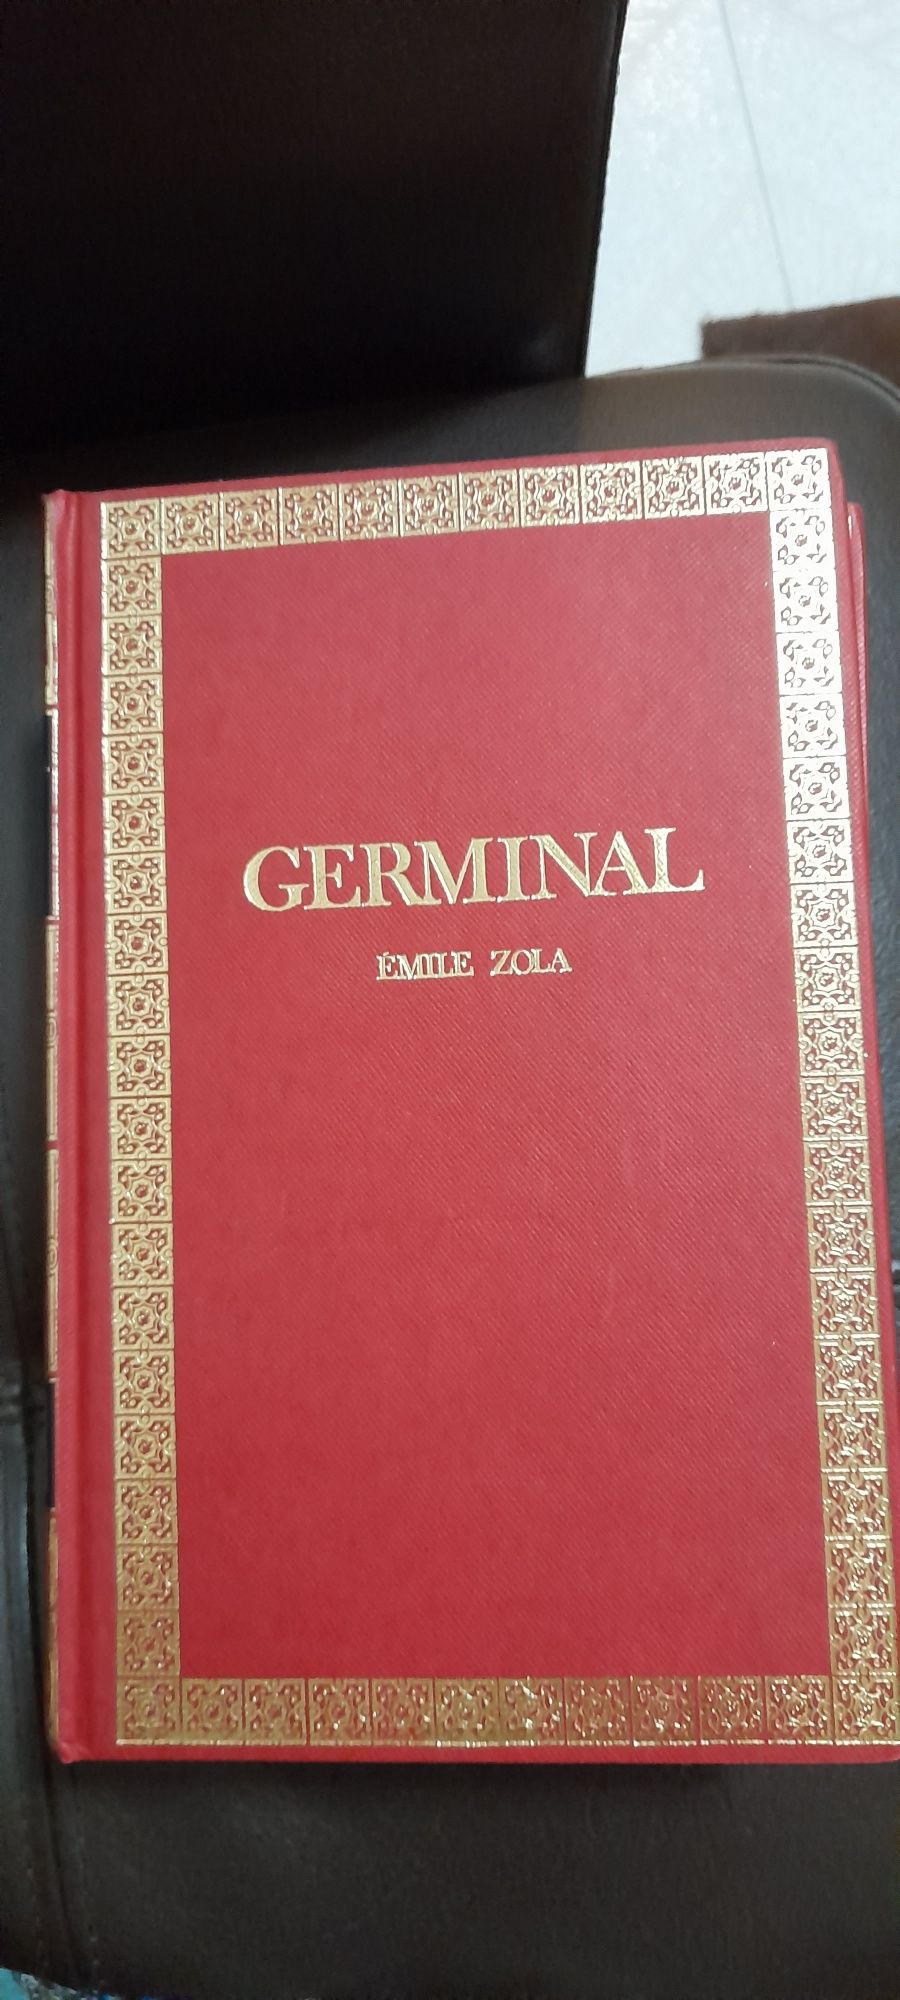 Livro " Germinal "